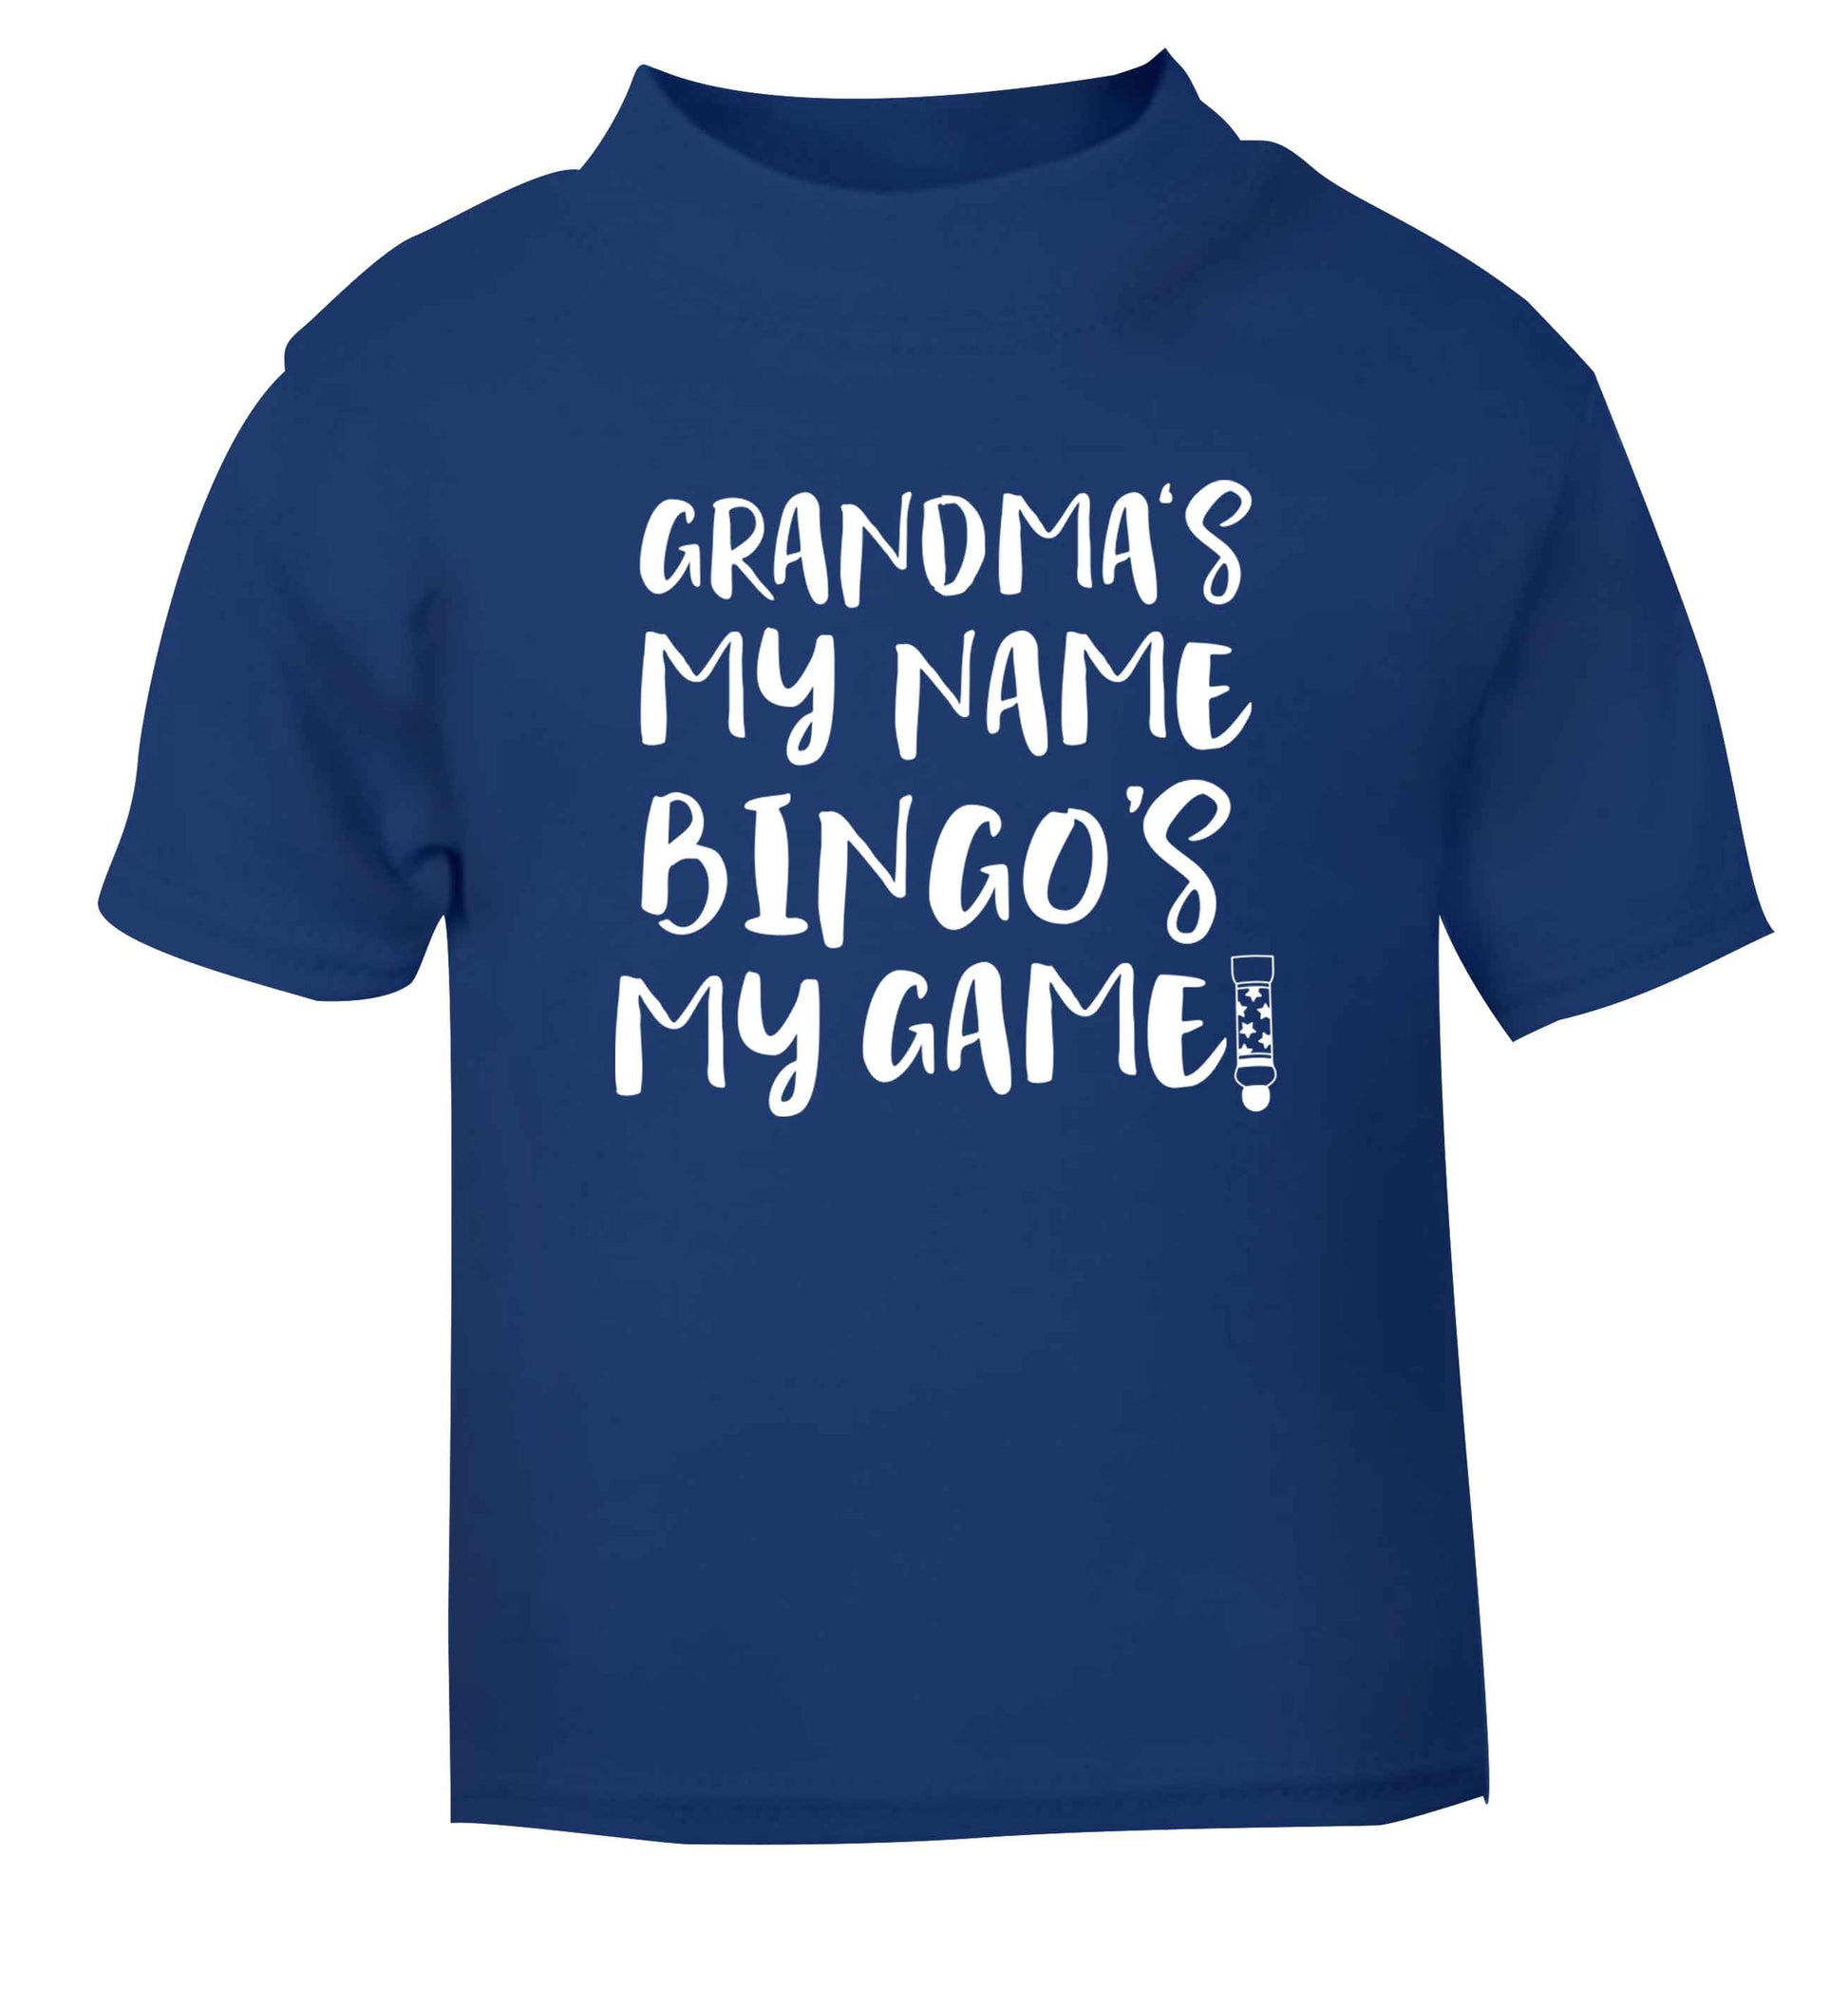 Grandma's my name bingo's my game! blue Baby Toddler Tshirt 2 Years